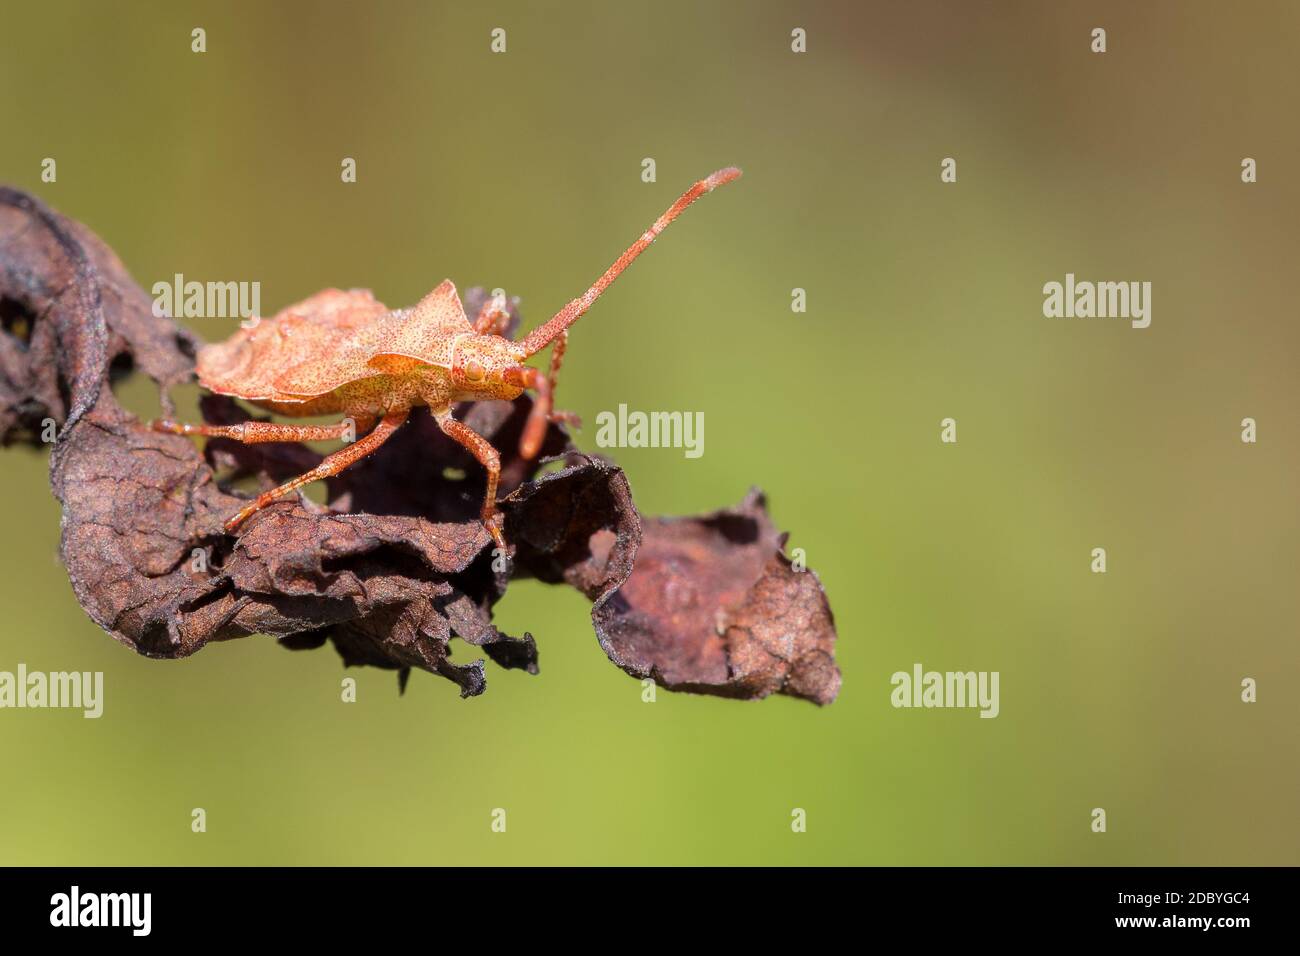 Dettaglio di bug nella foresta, scarabeo Hemiptera Heteroptera (Syromastus rhombeus), Europa, Repubblica Ceca fauna selvatica Foto Stock